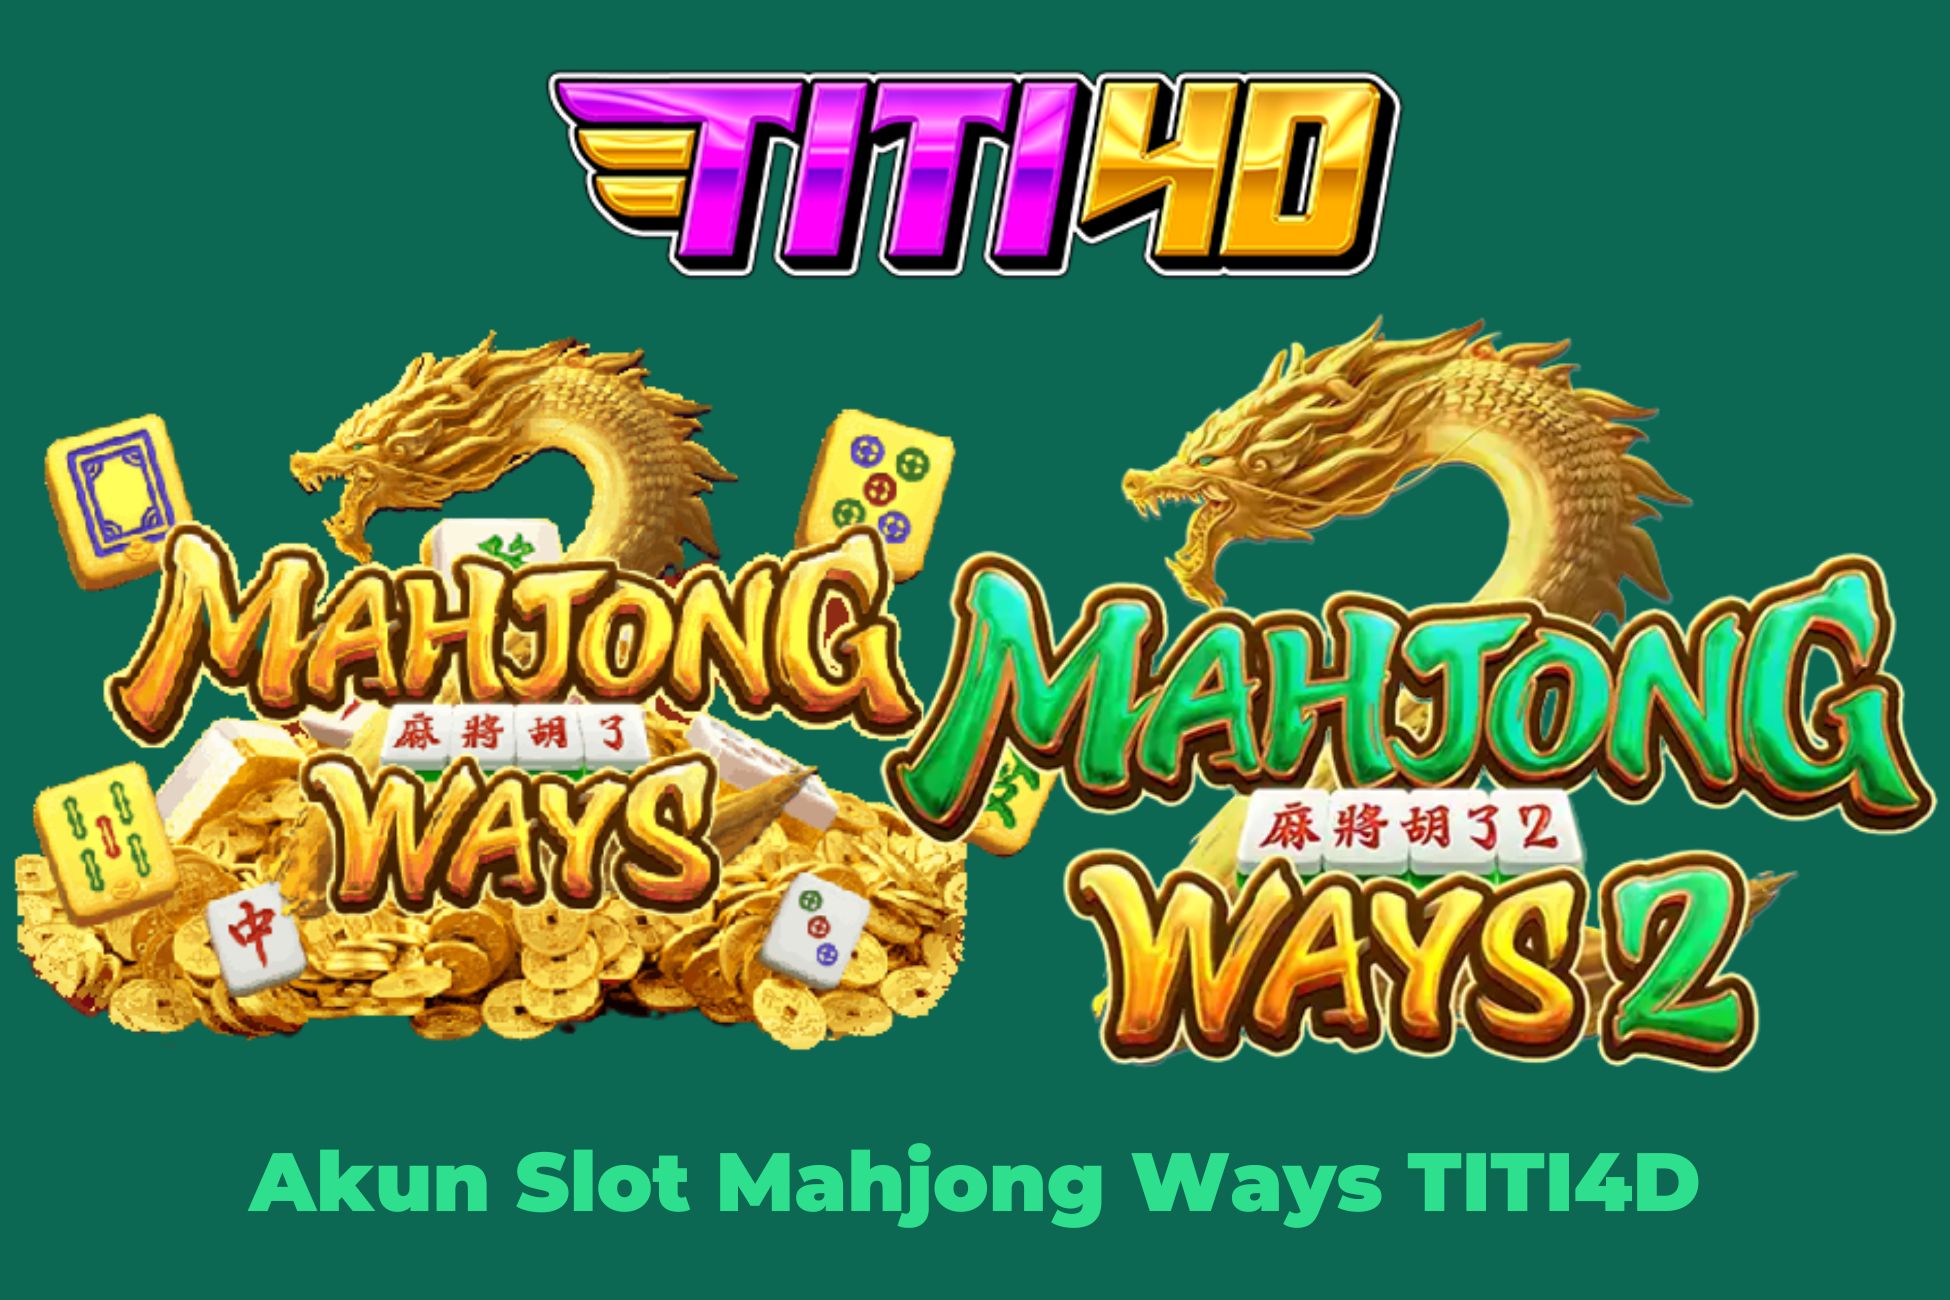 Akun Slot Mahjong Ways TITI4D